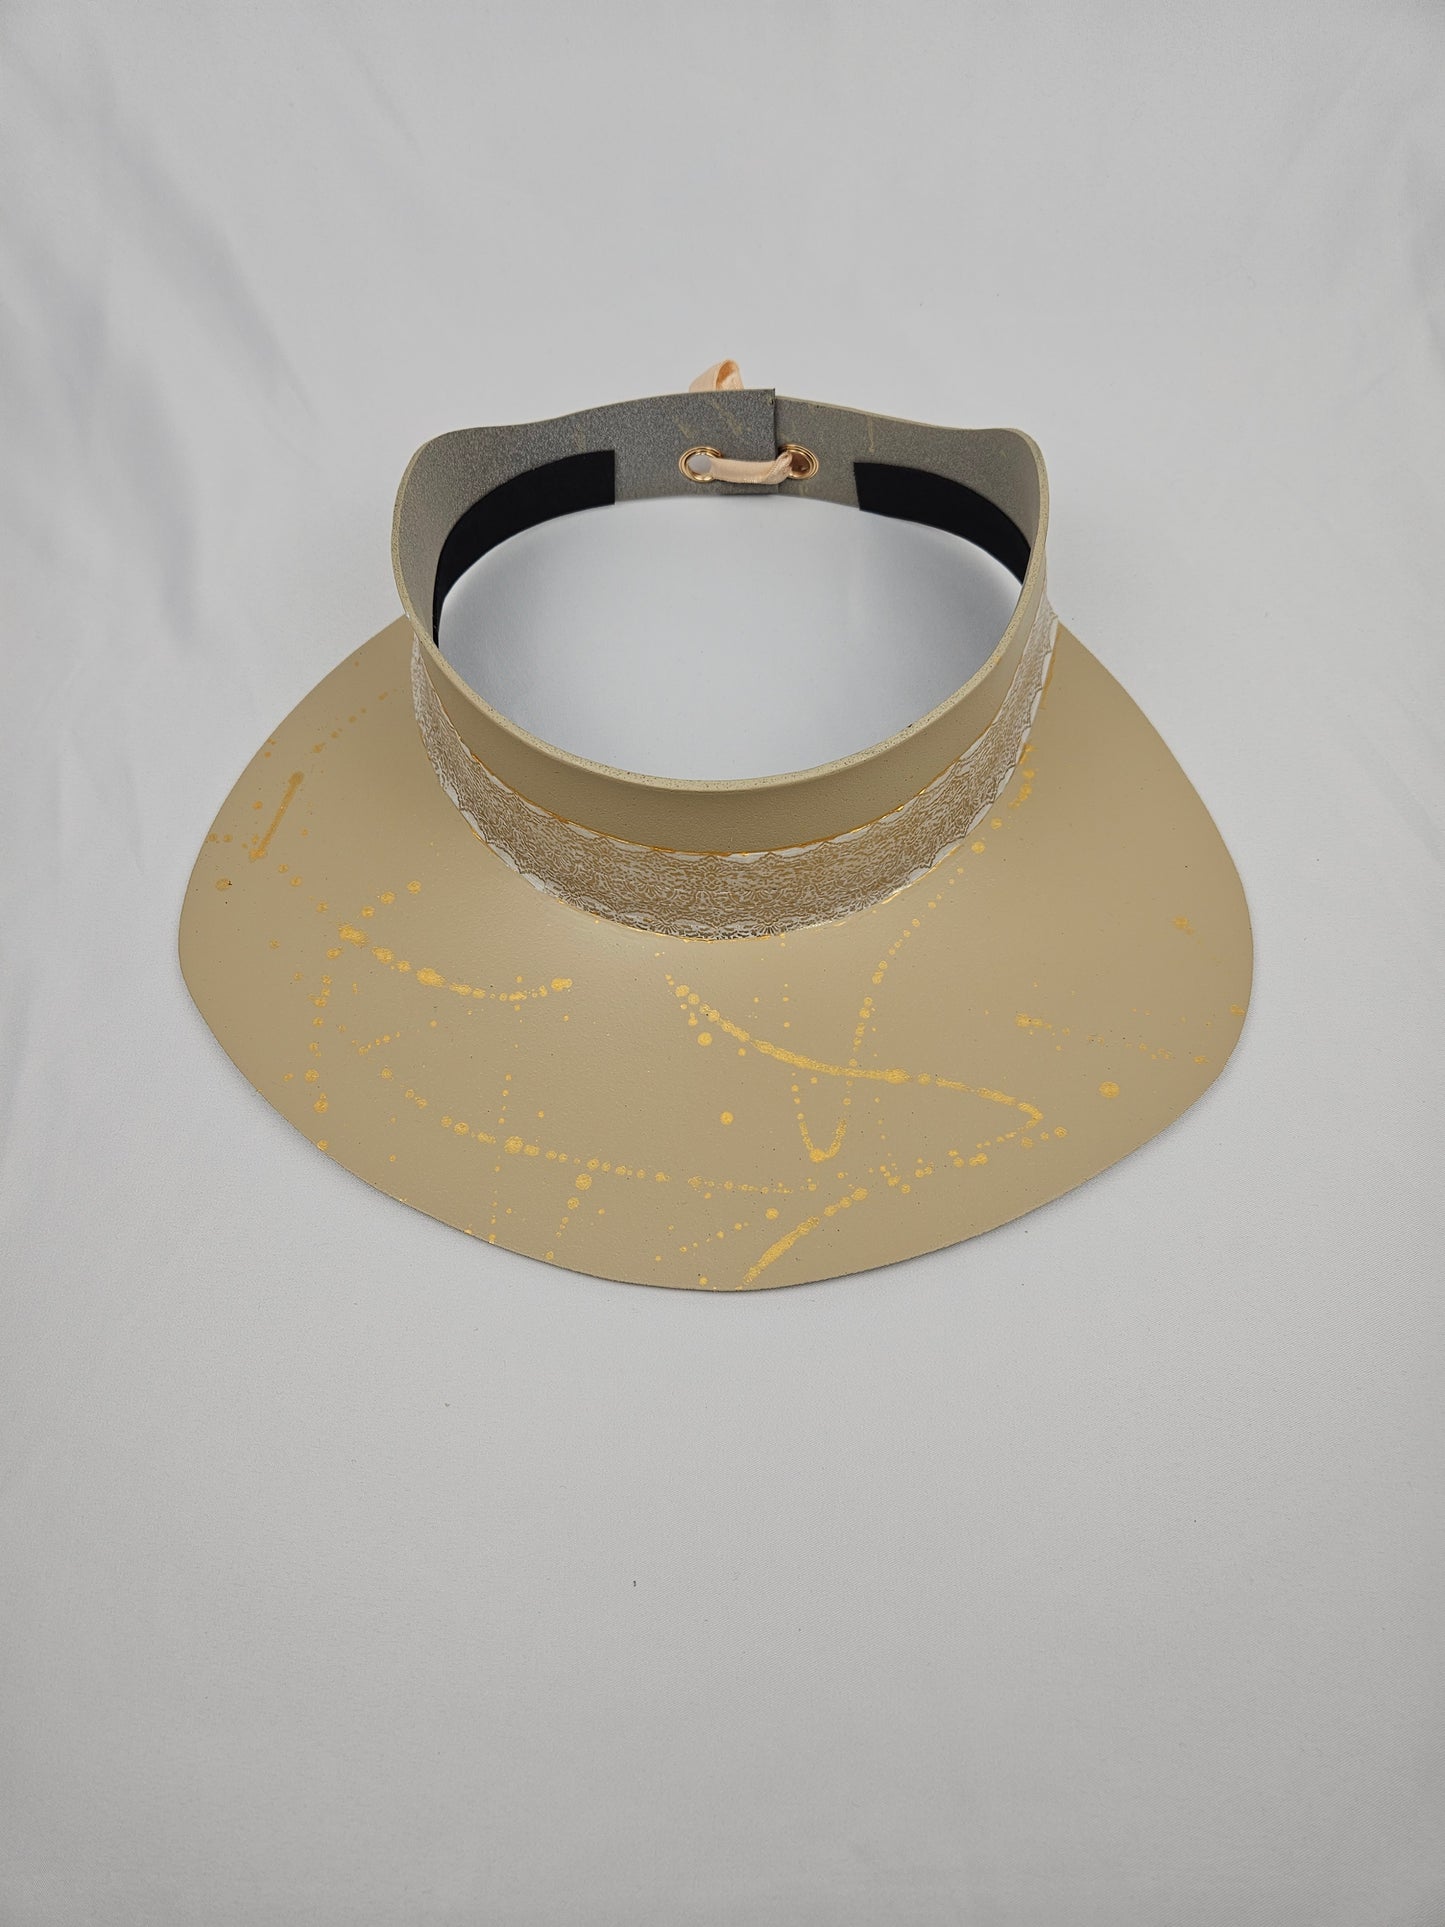 Beautiful Beige Audrey Sun Visor Hat with Elegant Golden Band and Paint Splatter: 1940s, Walks, Brunch, Tea, Golf, Wedding, Church, No Headache, Easter, Pool